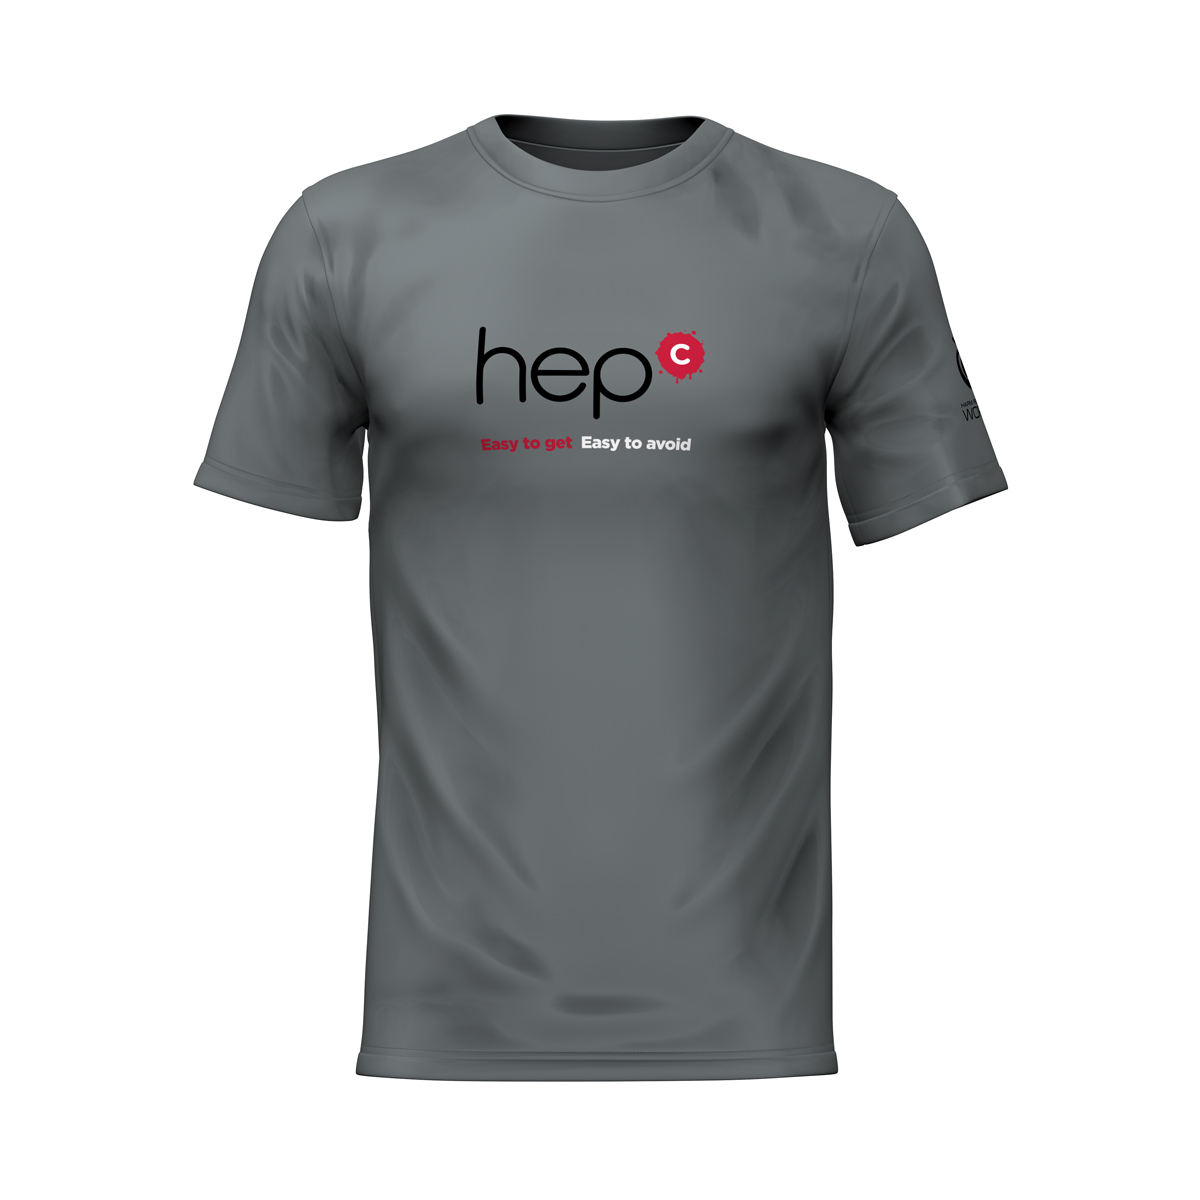 Hep C campaign T-shirt (medium)